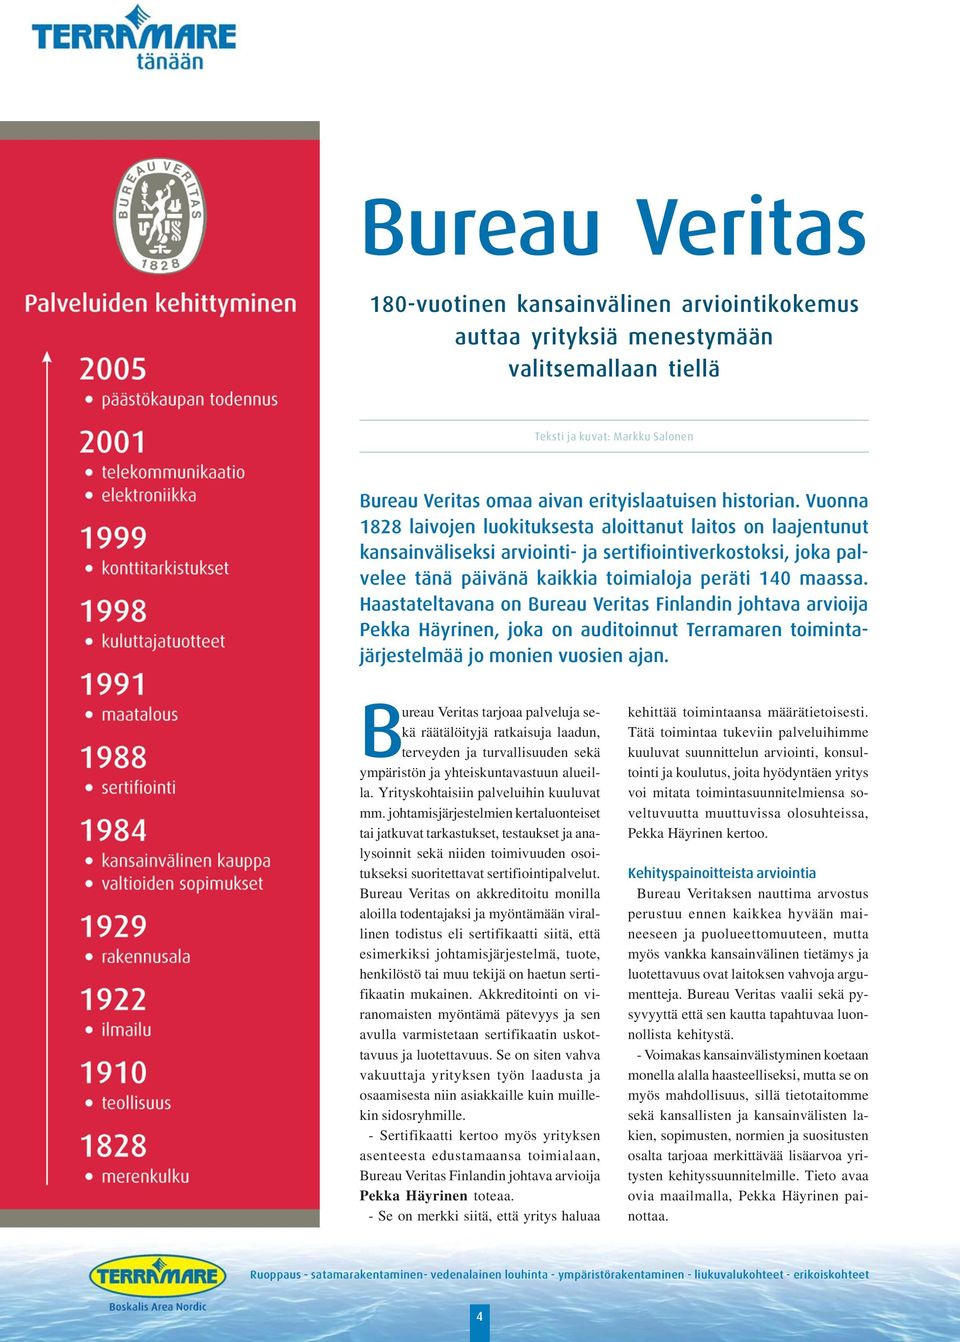 Haastateltavana on Bureau Veritas Finlandin johtava arvioija Pekka Häyrinen, joka on auditoinnut Terramaren toimintajärjestelmää jo monien vuosien ajan.